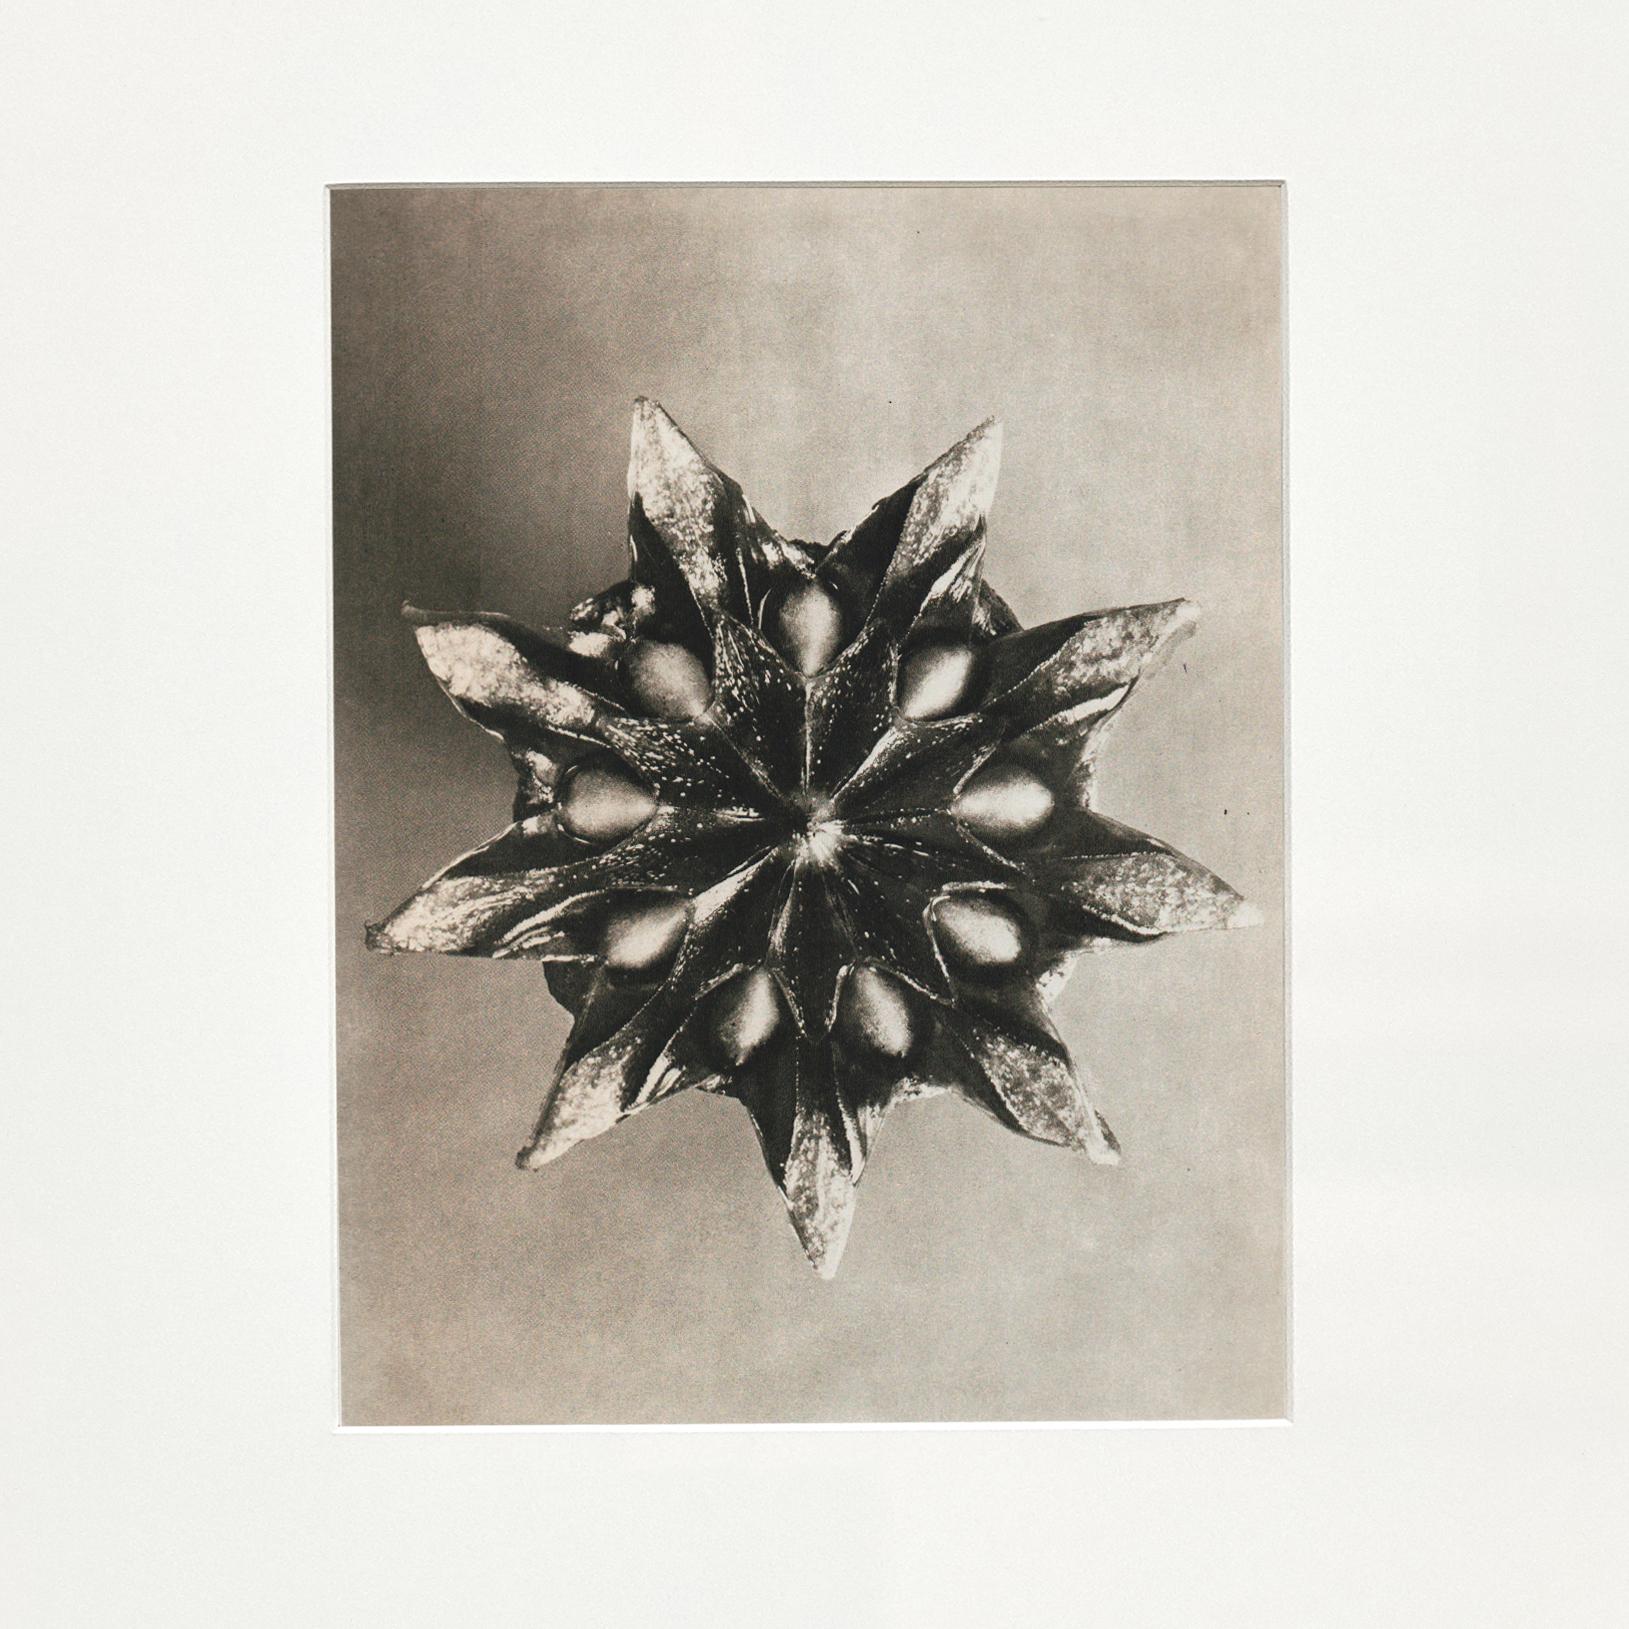 Spanish Set of 4 Karl Blossfeldt Black White Flower Photogravure Botanic Photography